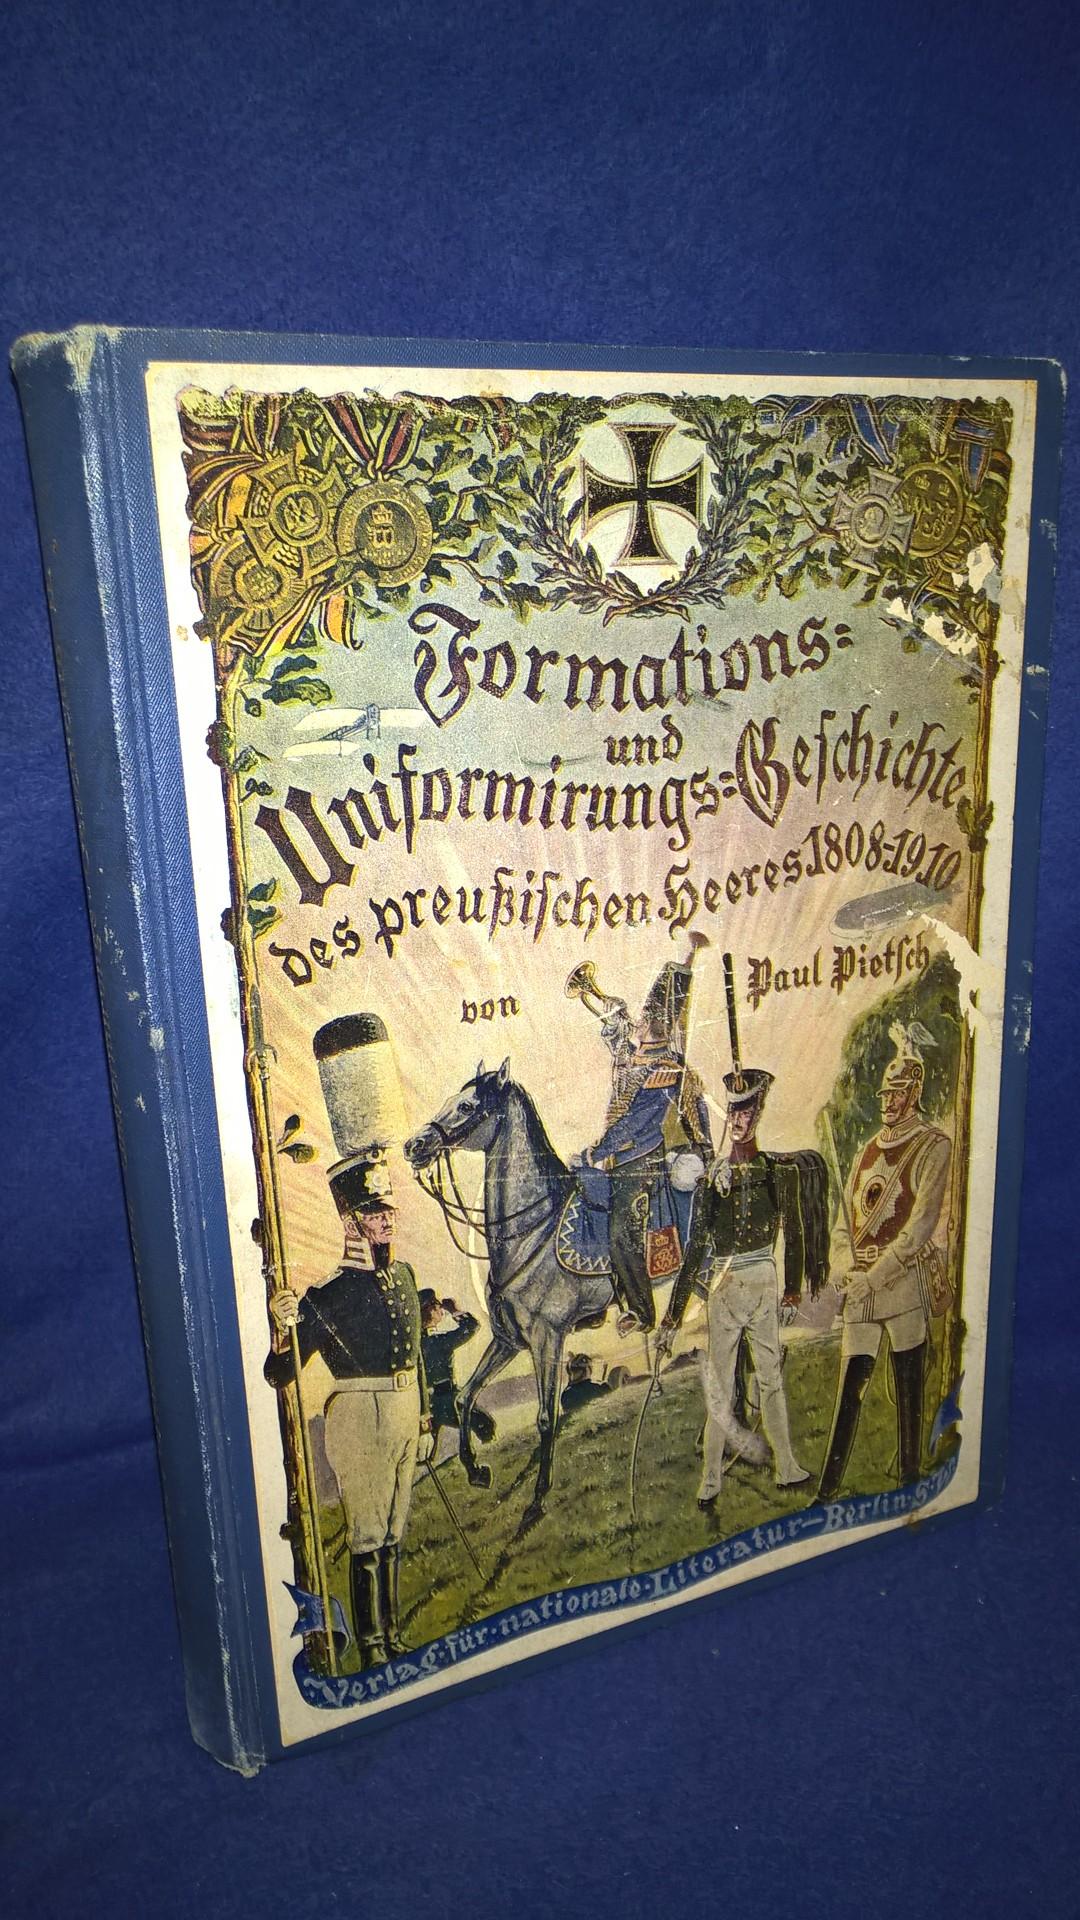 Die Formations- und Uniformierungs-Geschichte des preußischen Heeres 1808-1912 - Band III: Kavallerie, Artillerie, Train, Generalität usw.